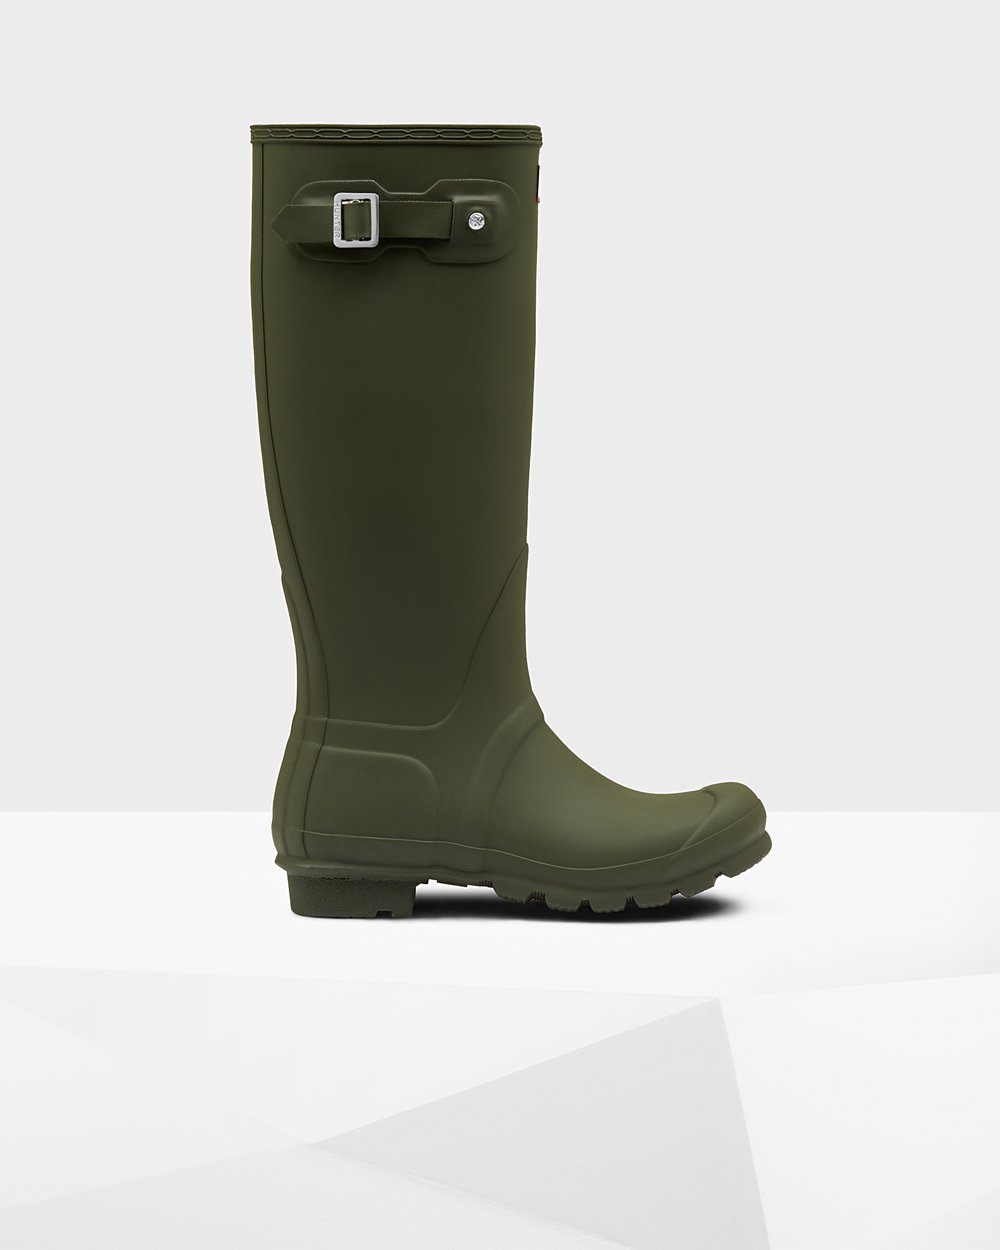 Womens Tall Rain Boots - Hunter Original (85WRJDCHK) - Dark Olive